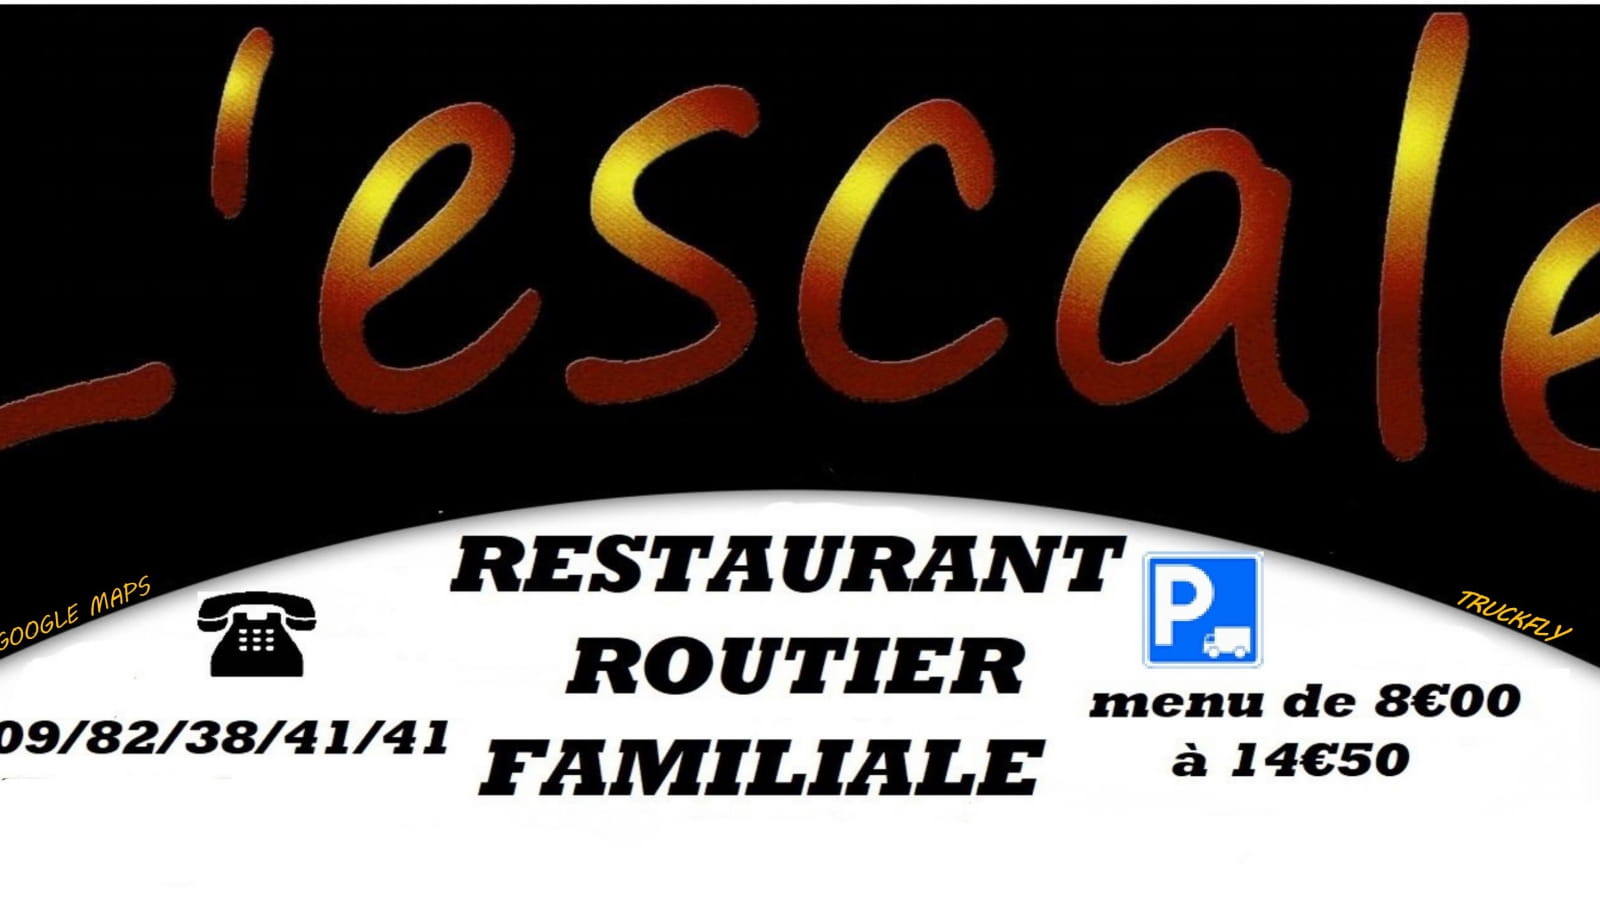 Bar-Restaurant/Routier 'L'Escale'